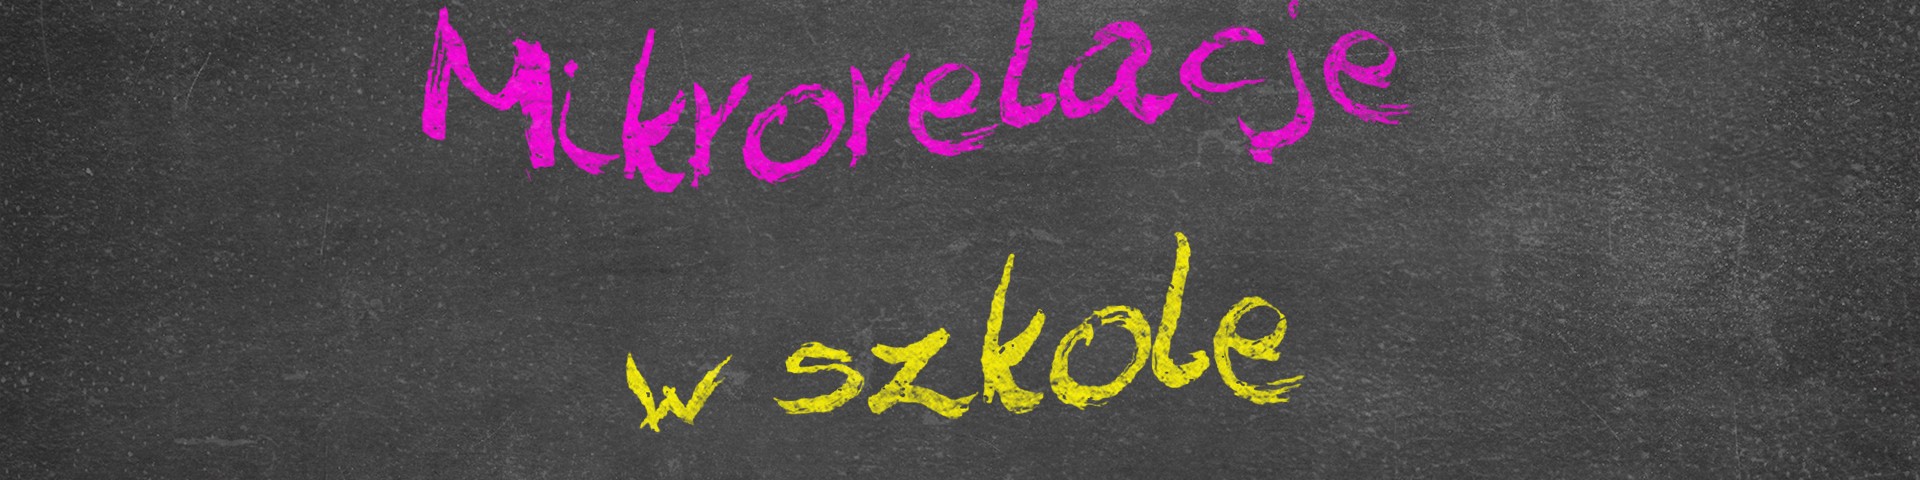 Horyzonty polskiej edukacji – mikrorelacje